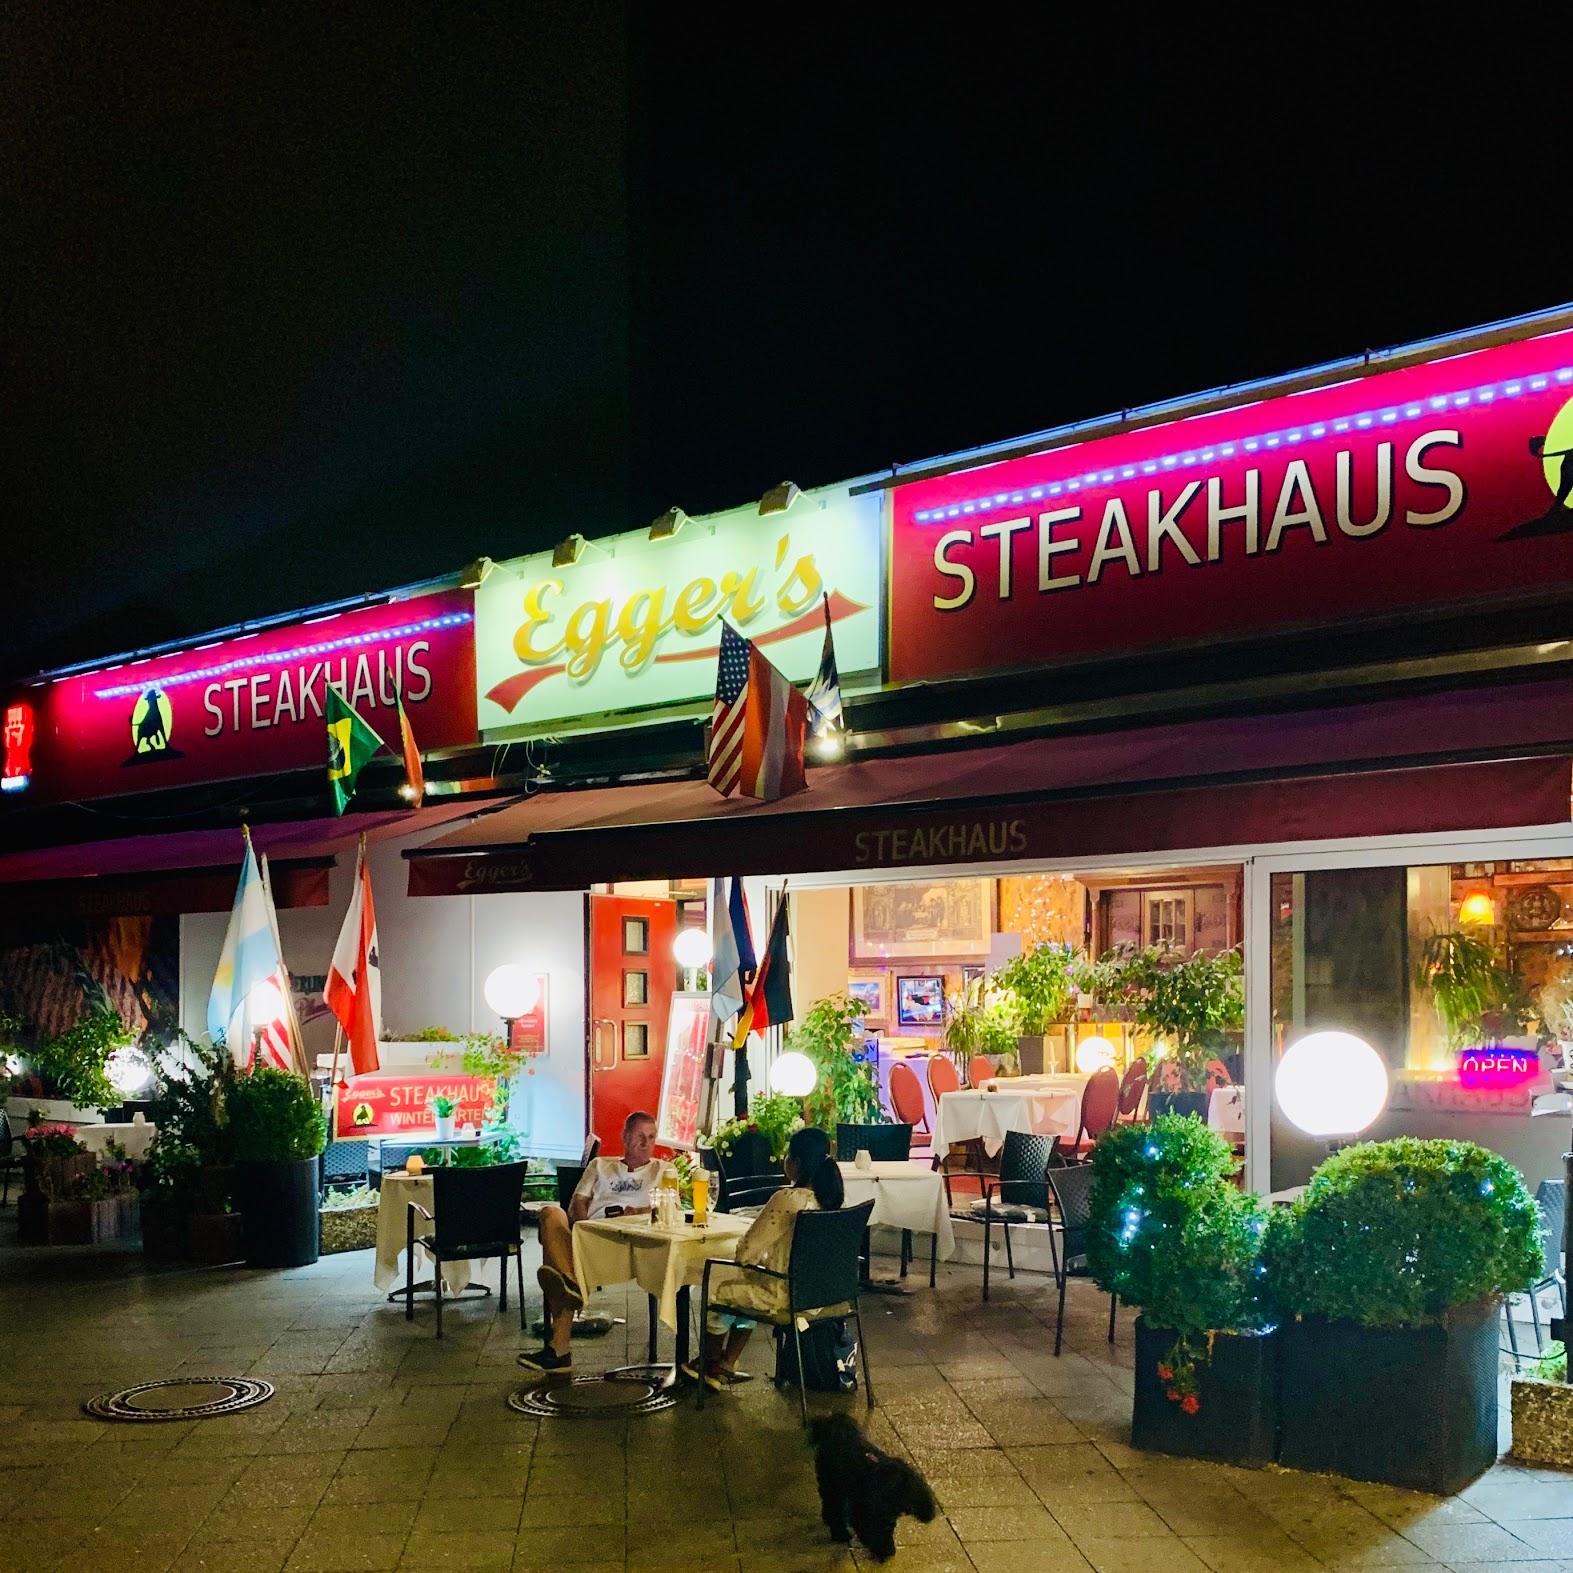 Restaurant "Eggers Steakhaus" in Berlin